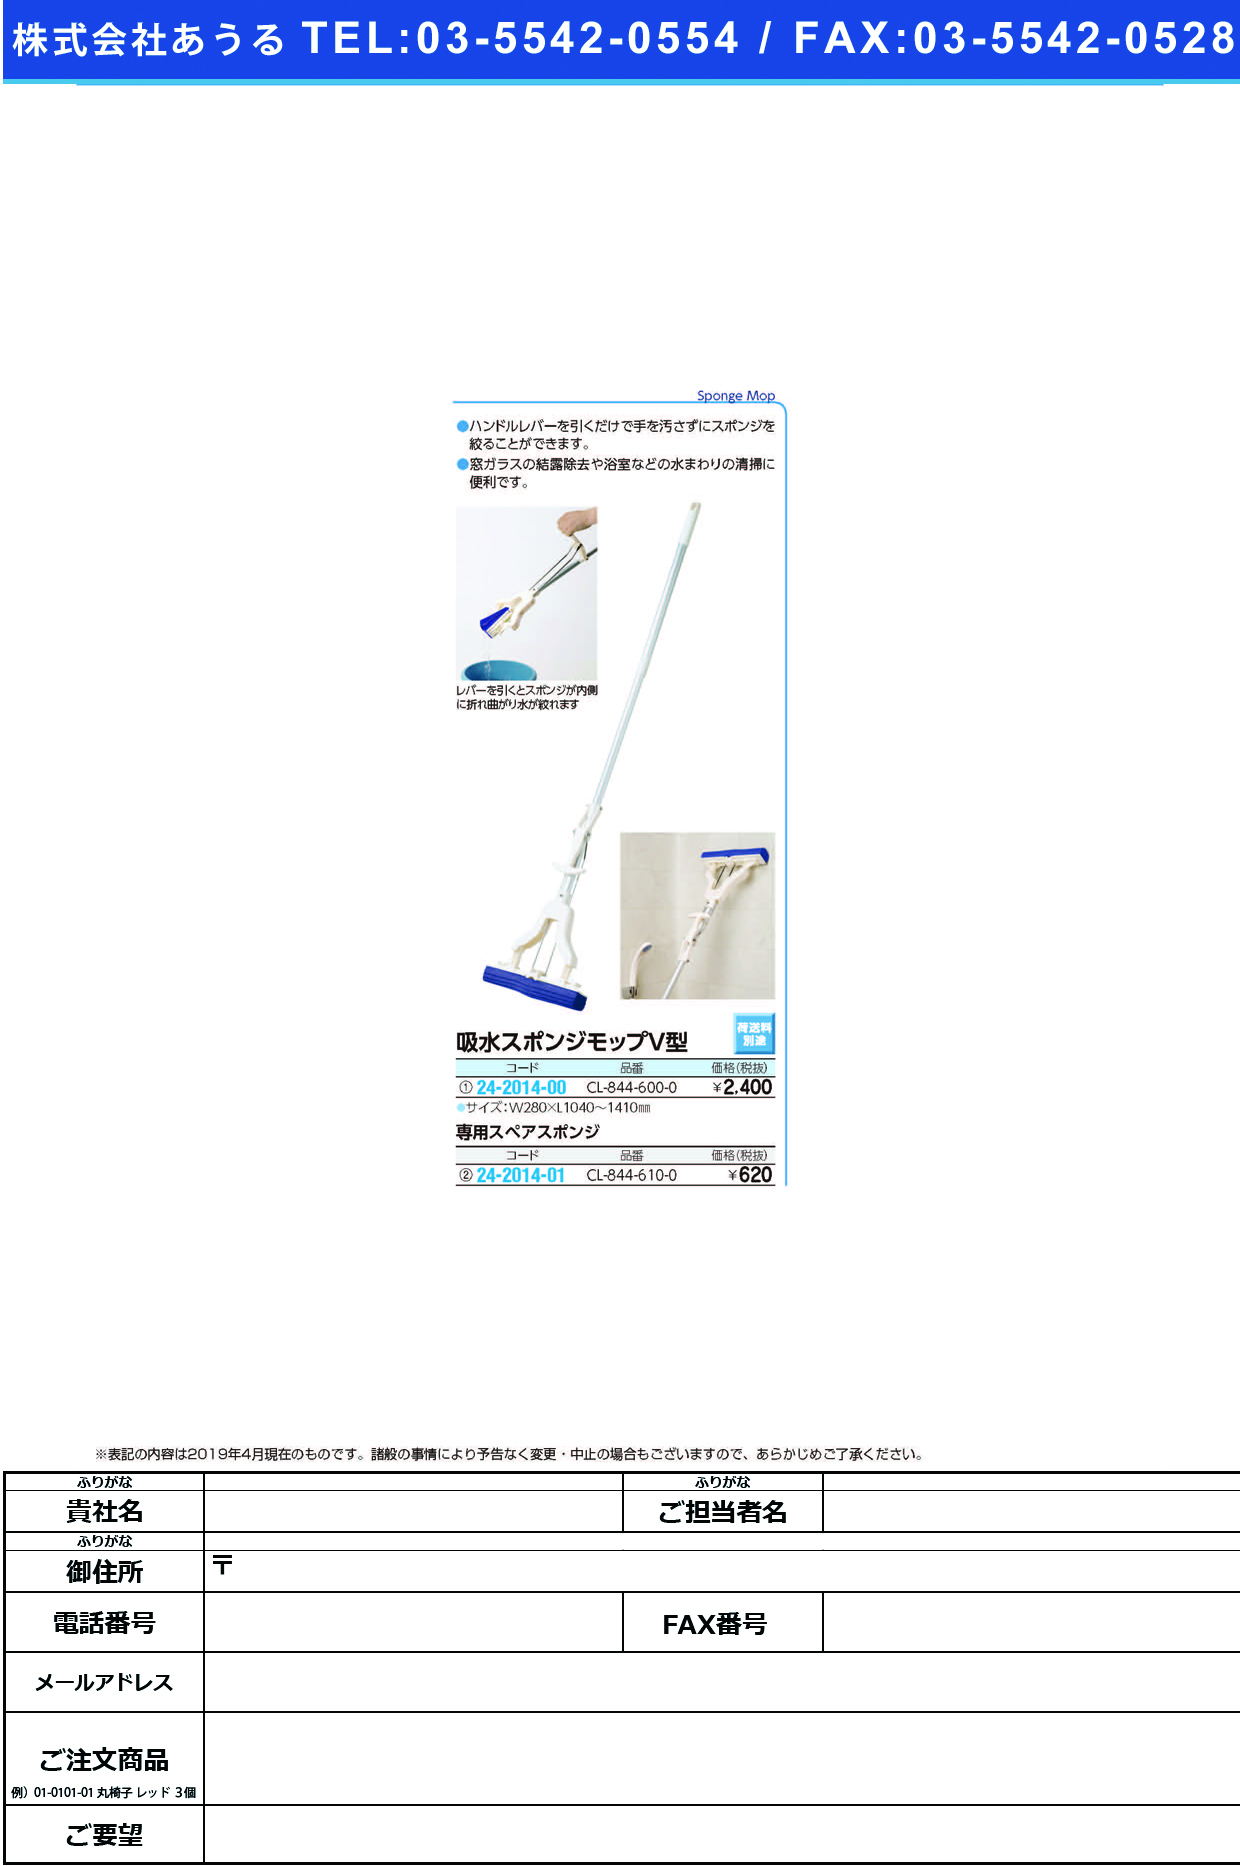 (24-2014-01)吸水スポンジモップＶ型用スペア CL-844-610-0 ｷｭｳｽｲｽﾎﾟﾝｼﾞﾓｯﾌﾟｽﾍﾟｱ(テラモト)【1個単位】【2019年カタログ商品】